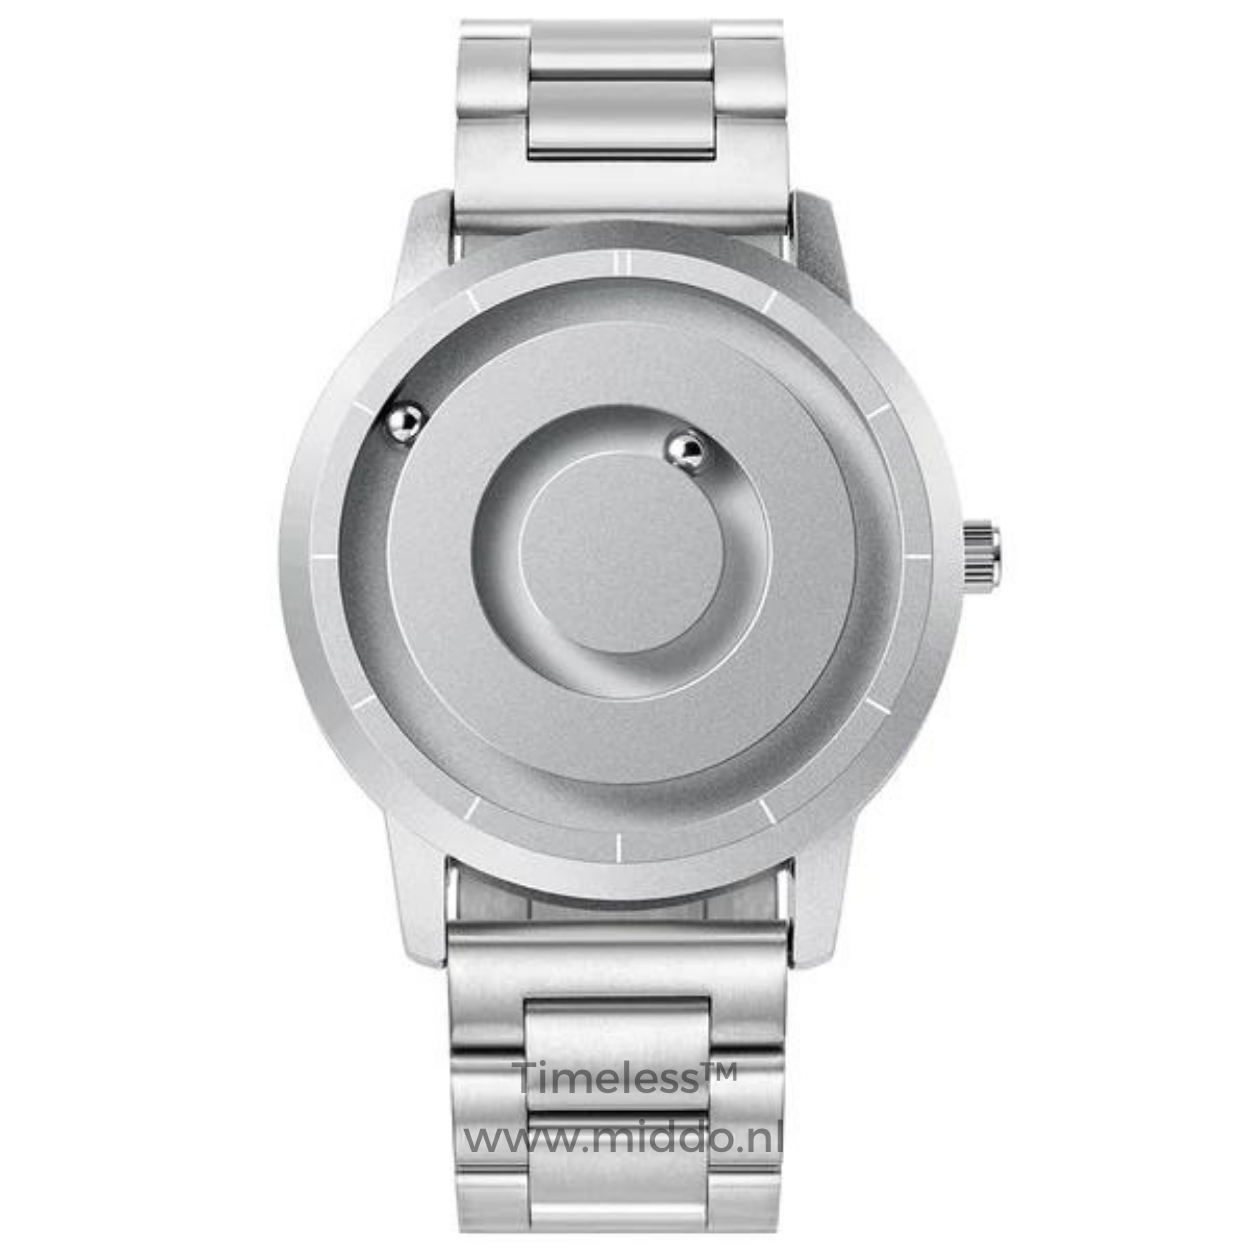 Timelös™ - Het meest authentieke horloge van 2023! - Gemaakt in Zwitserland